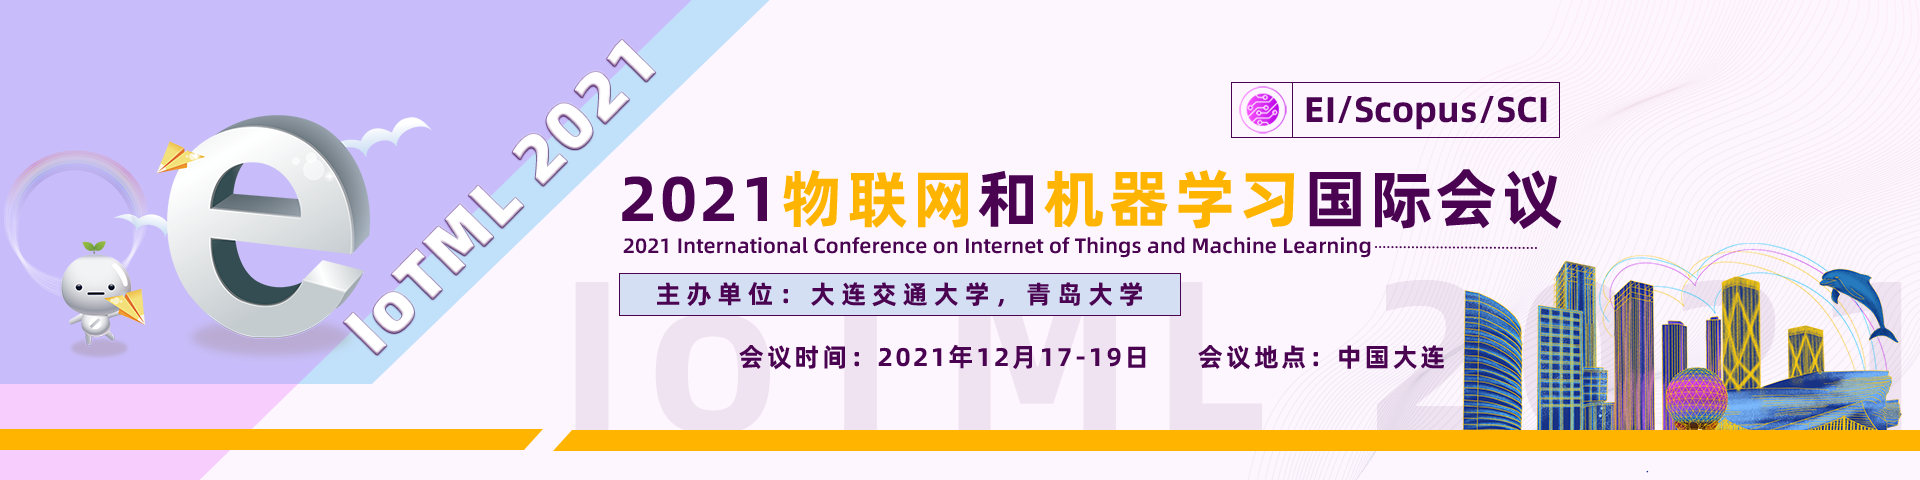 12月上海IoTML2021-艾思-何霞丽-20210609.png